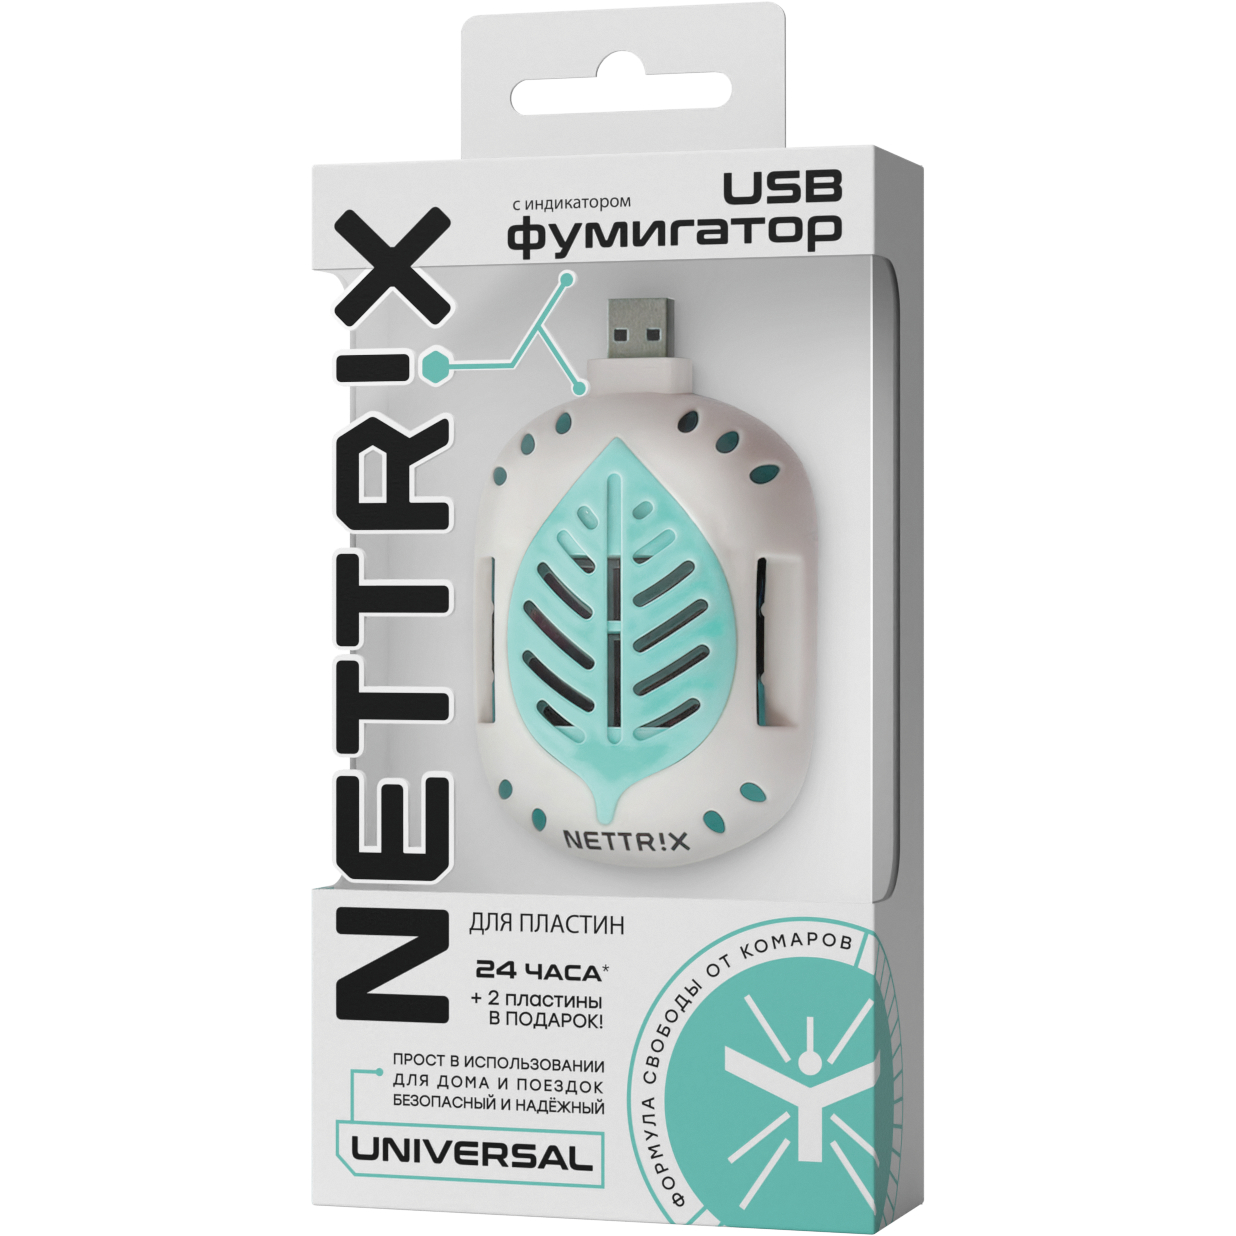 Фумигатор USB Nettrix Universal для пластин nettrix пластины от комаров длительного действия universal 10